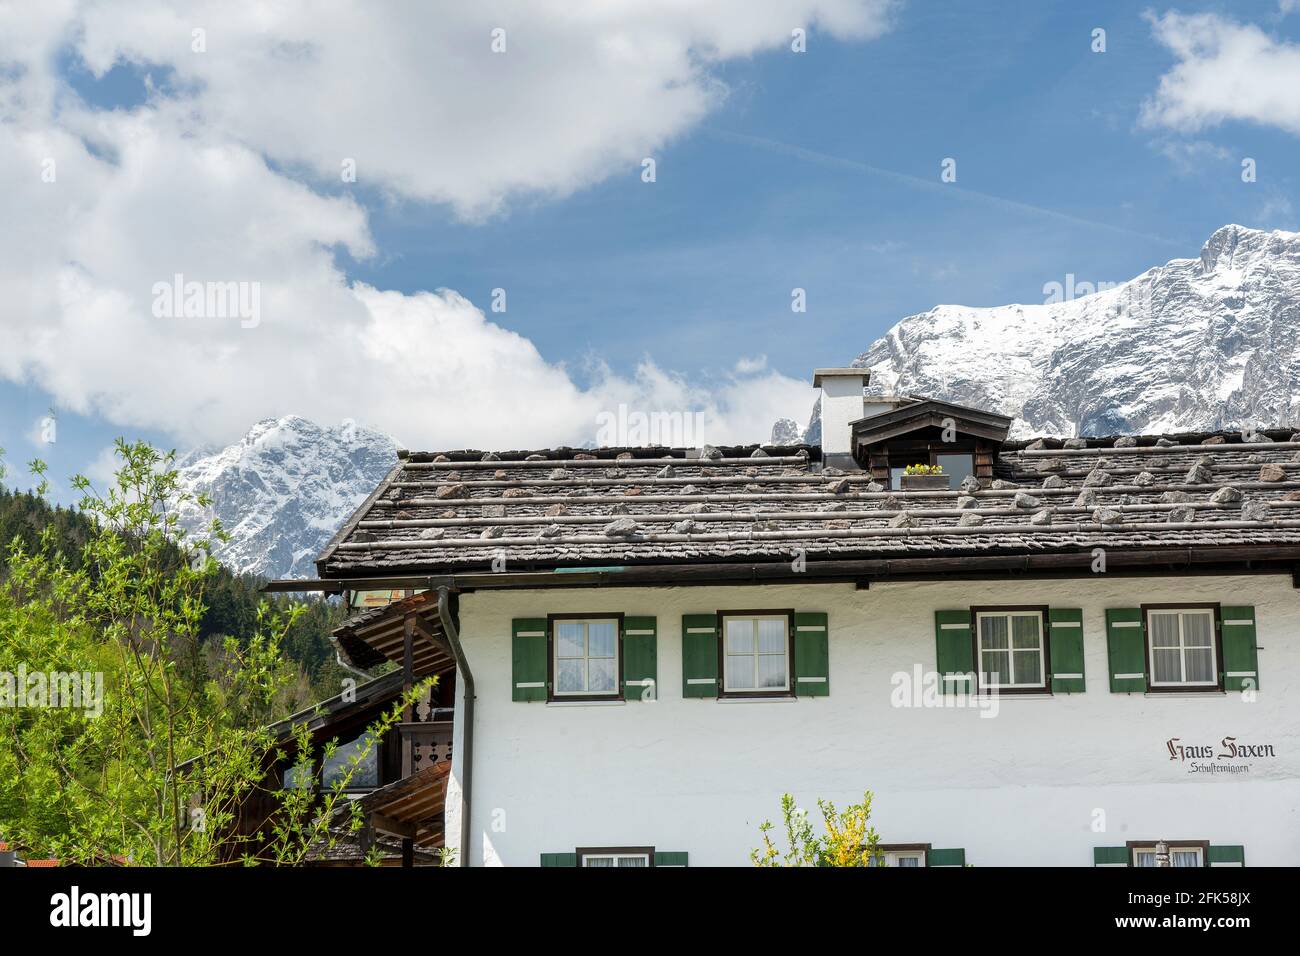 frühlingshaftes , mit Holzschnindeln gedecktes Haus mit der noch winterlichen Reiter Alpe in der Ramsau - Berchtesgadener Land Stock Photo